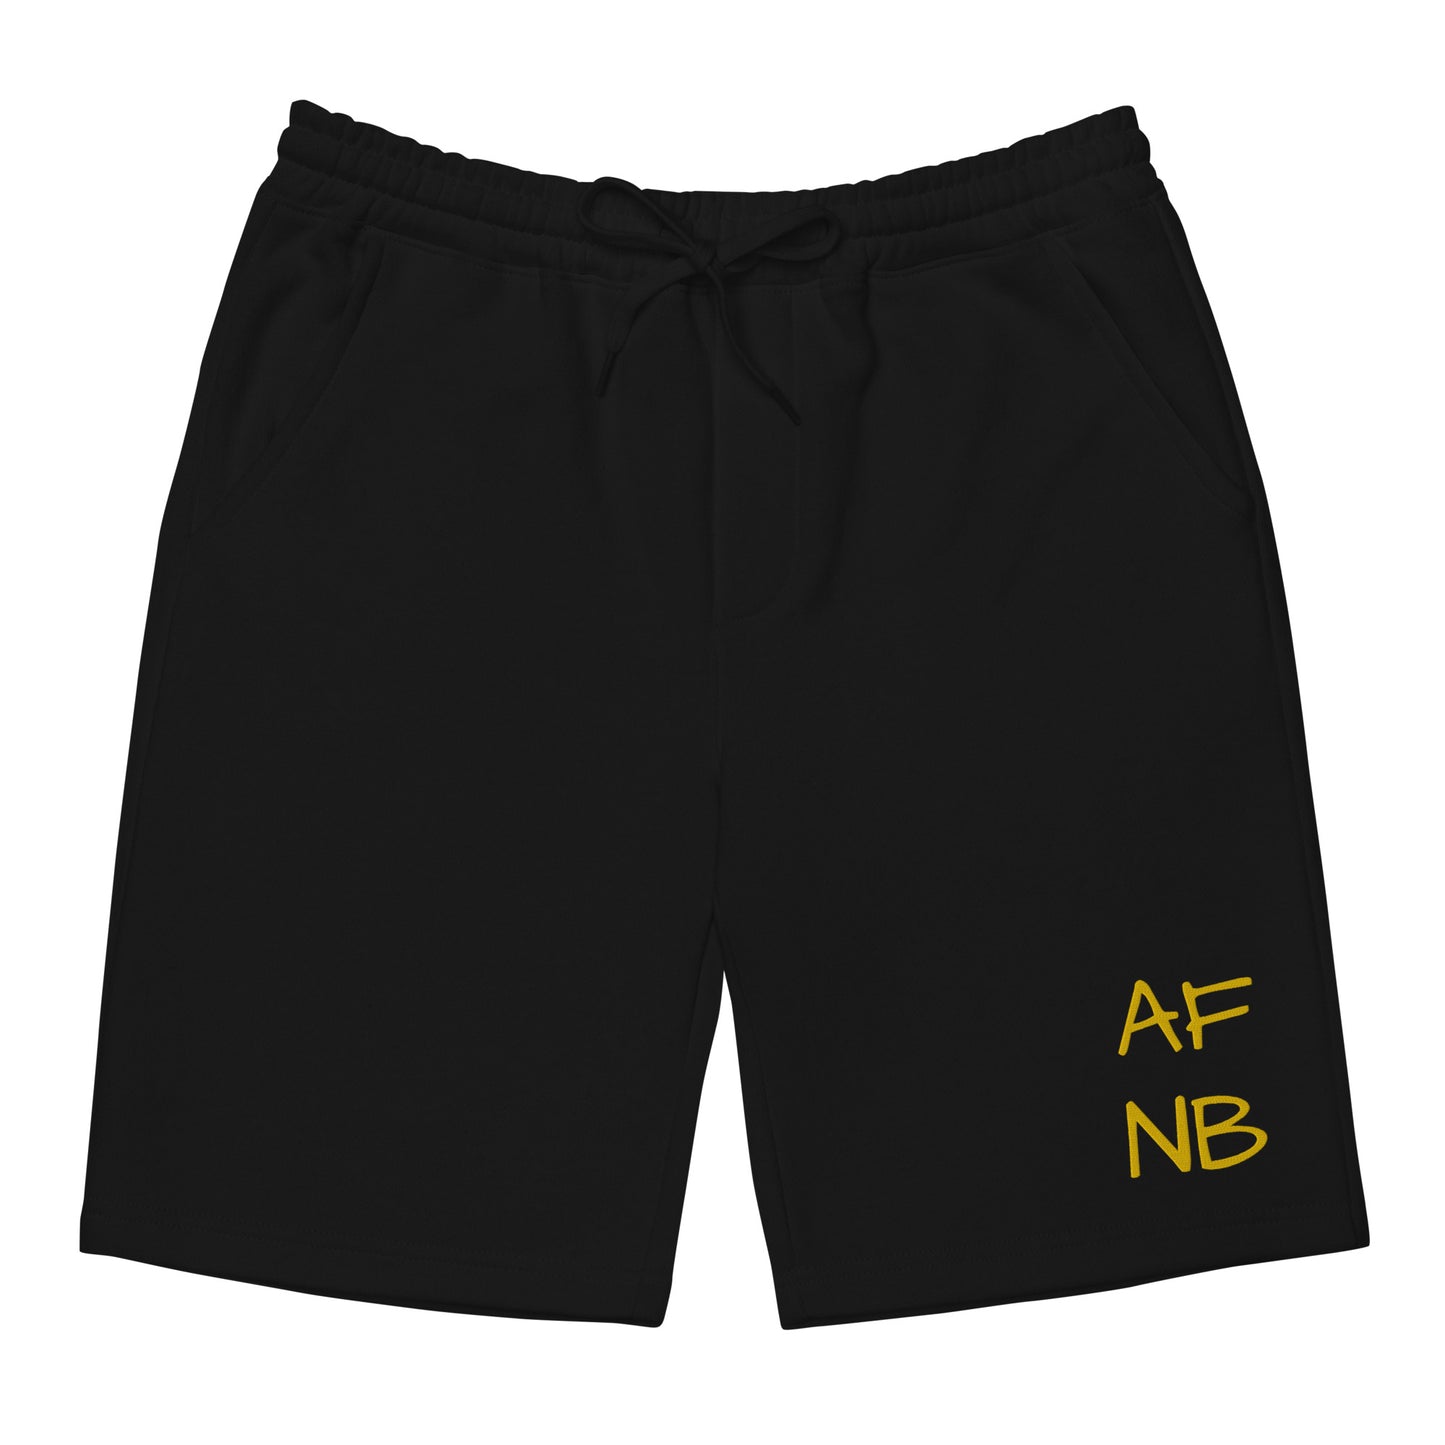 AFNB Fleece Shorts